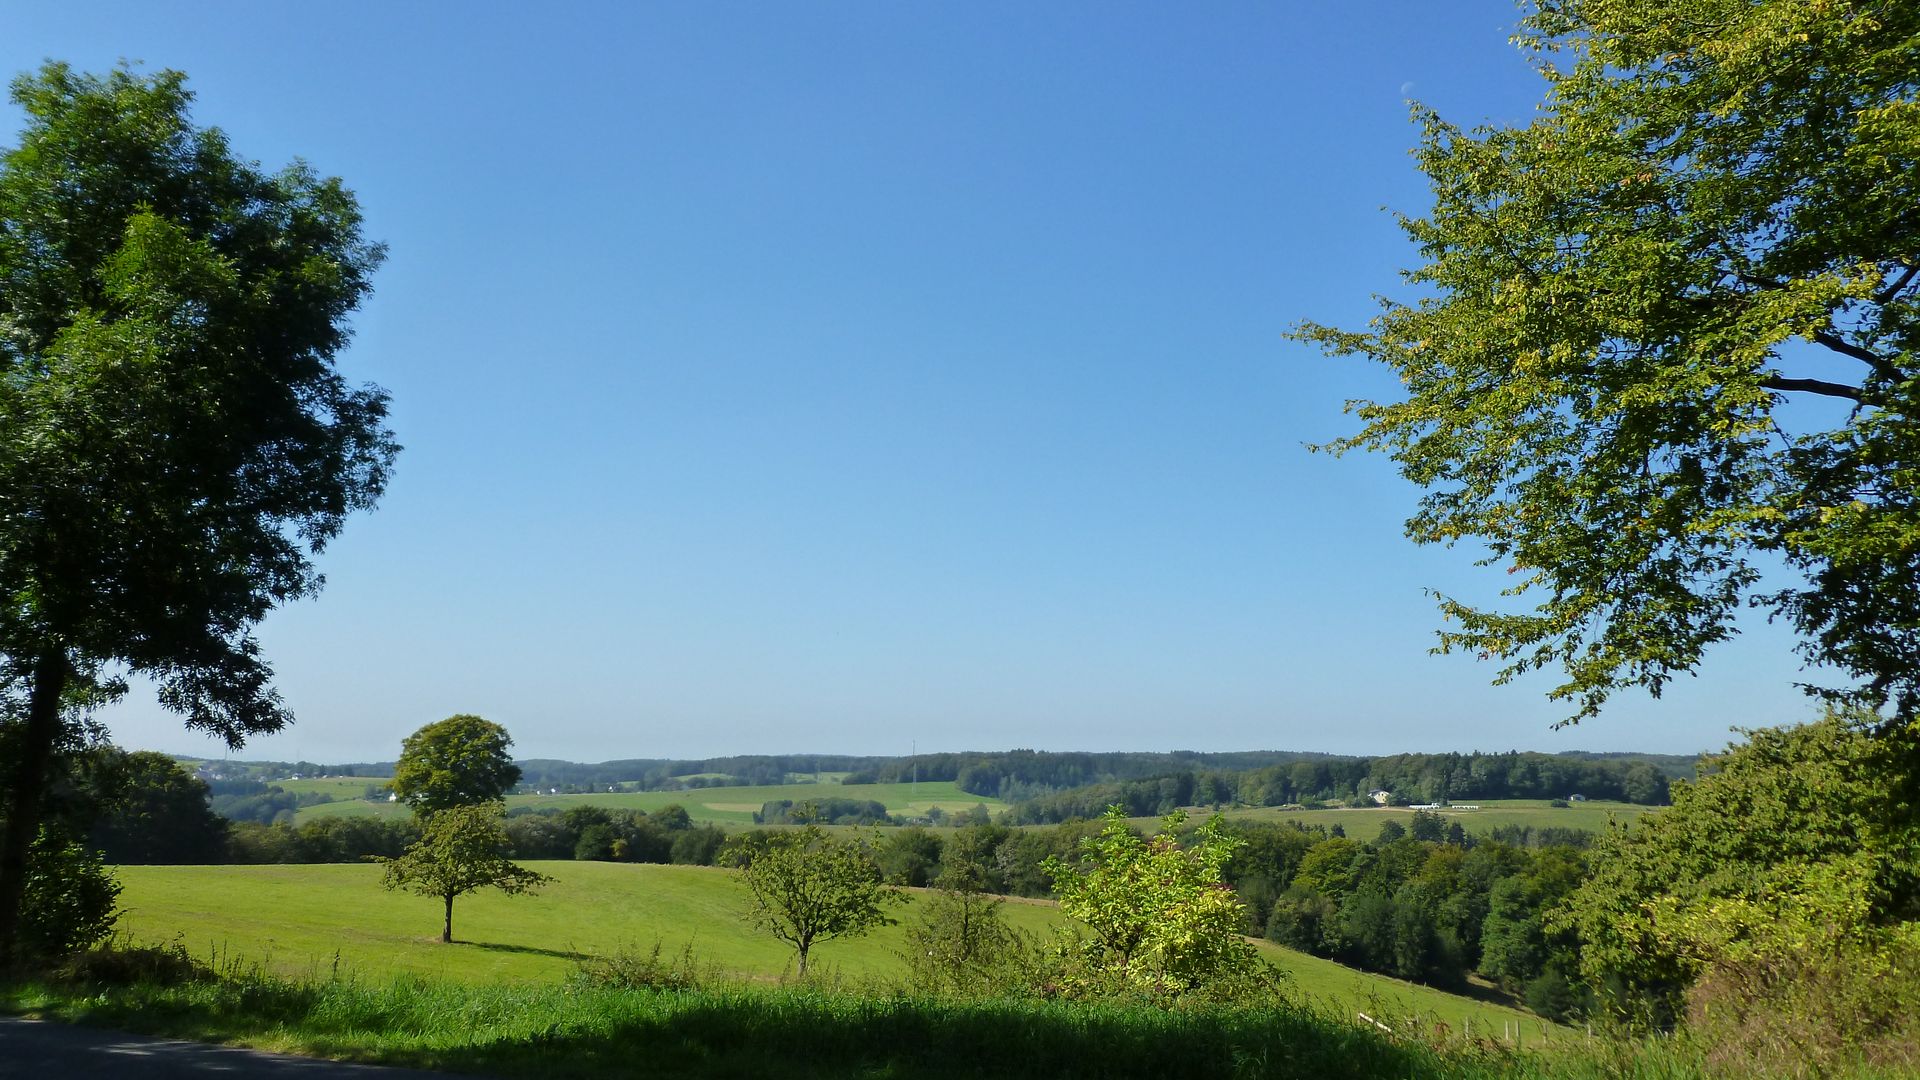 Blick auf eine hügelige Landschaft mit Wiesen und Bäumen bei schönem Wetter und blauem Himmel